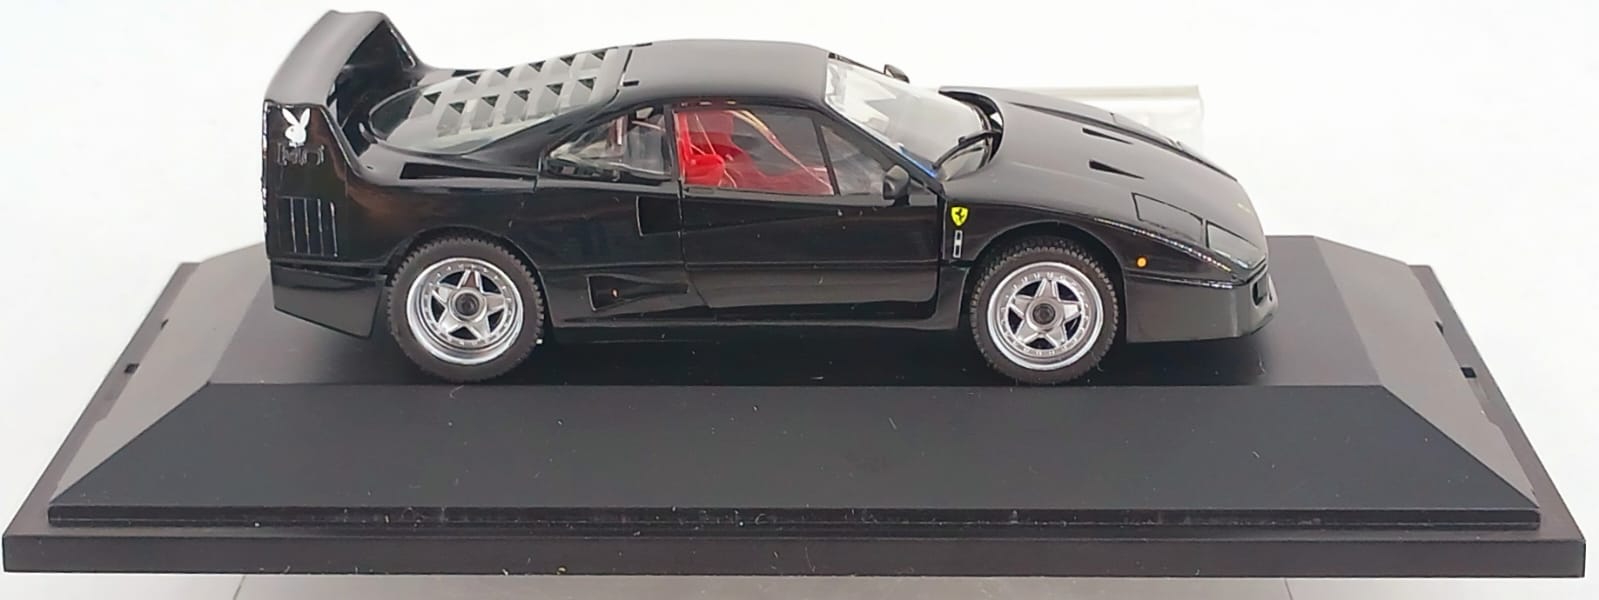 Ferrari F40 Playboy Edition 1:43